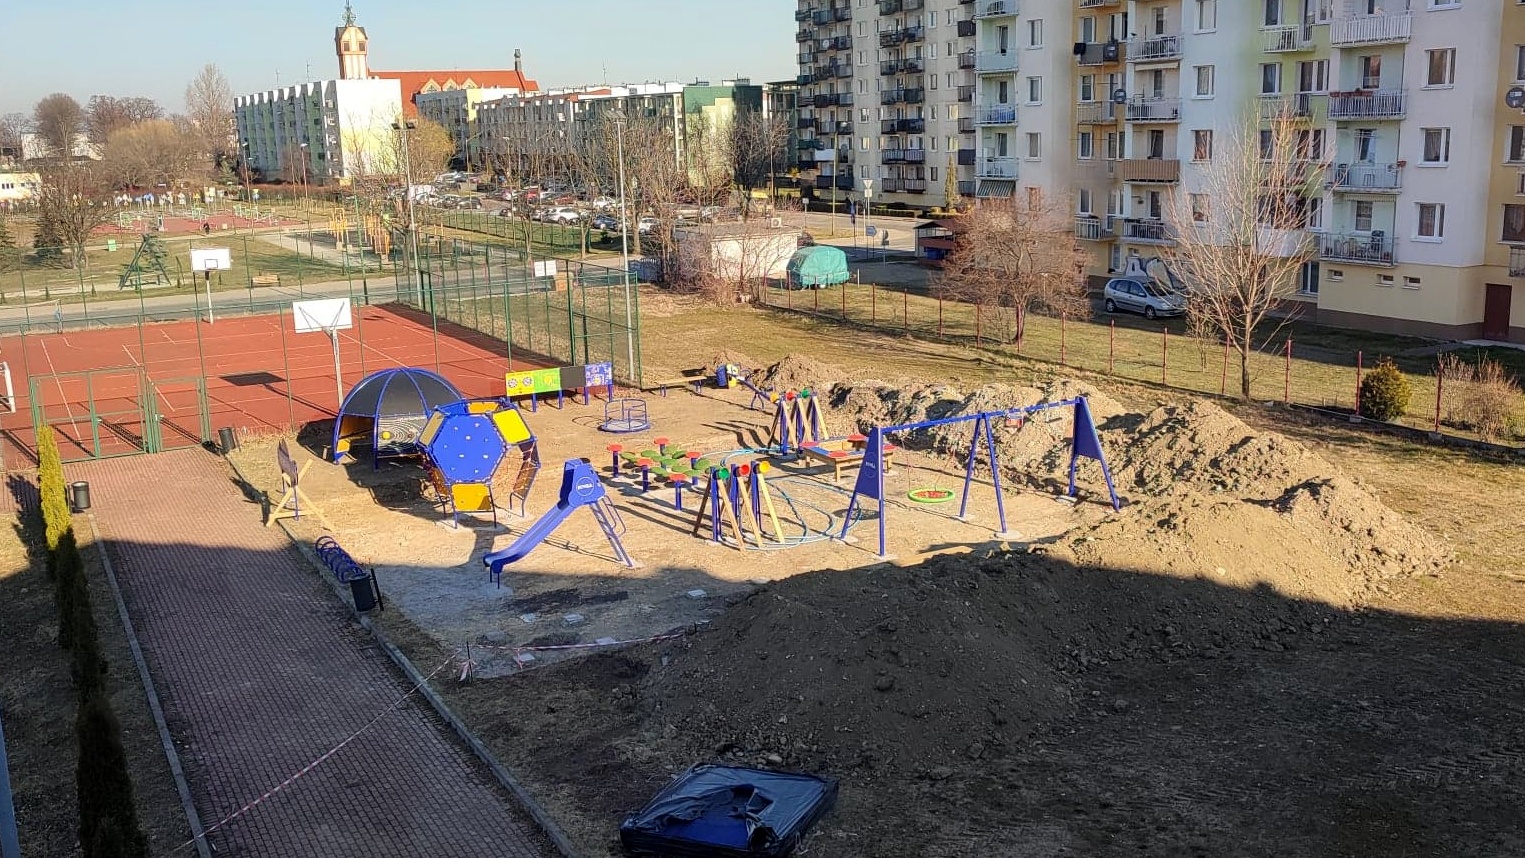 Widok z góry na plac zabaw w trakcie budowy